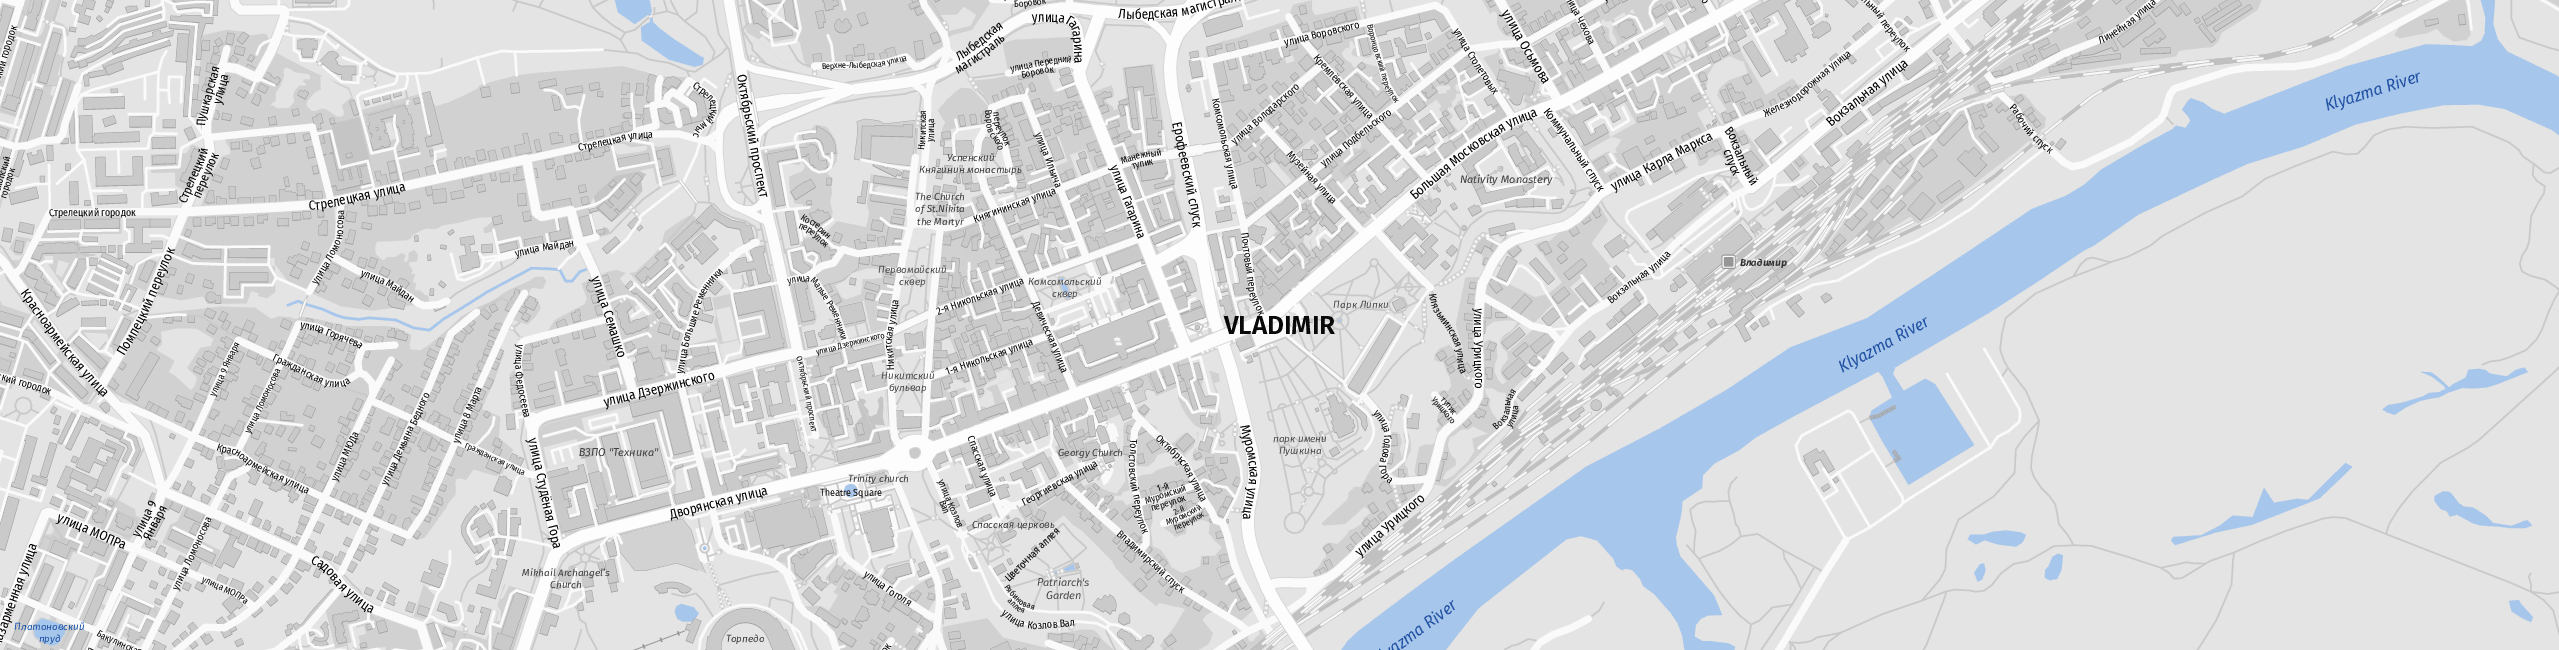 Stadtplan Wladimir zum Downloaden.